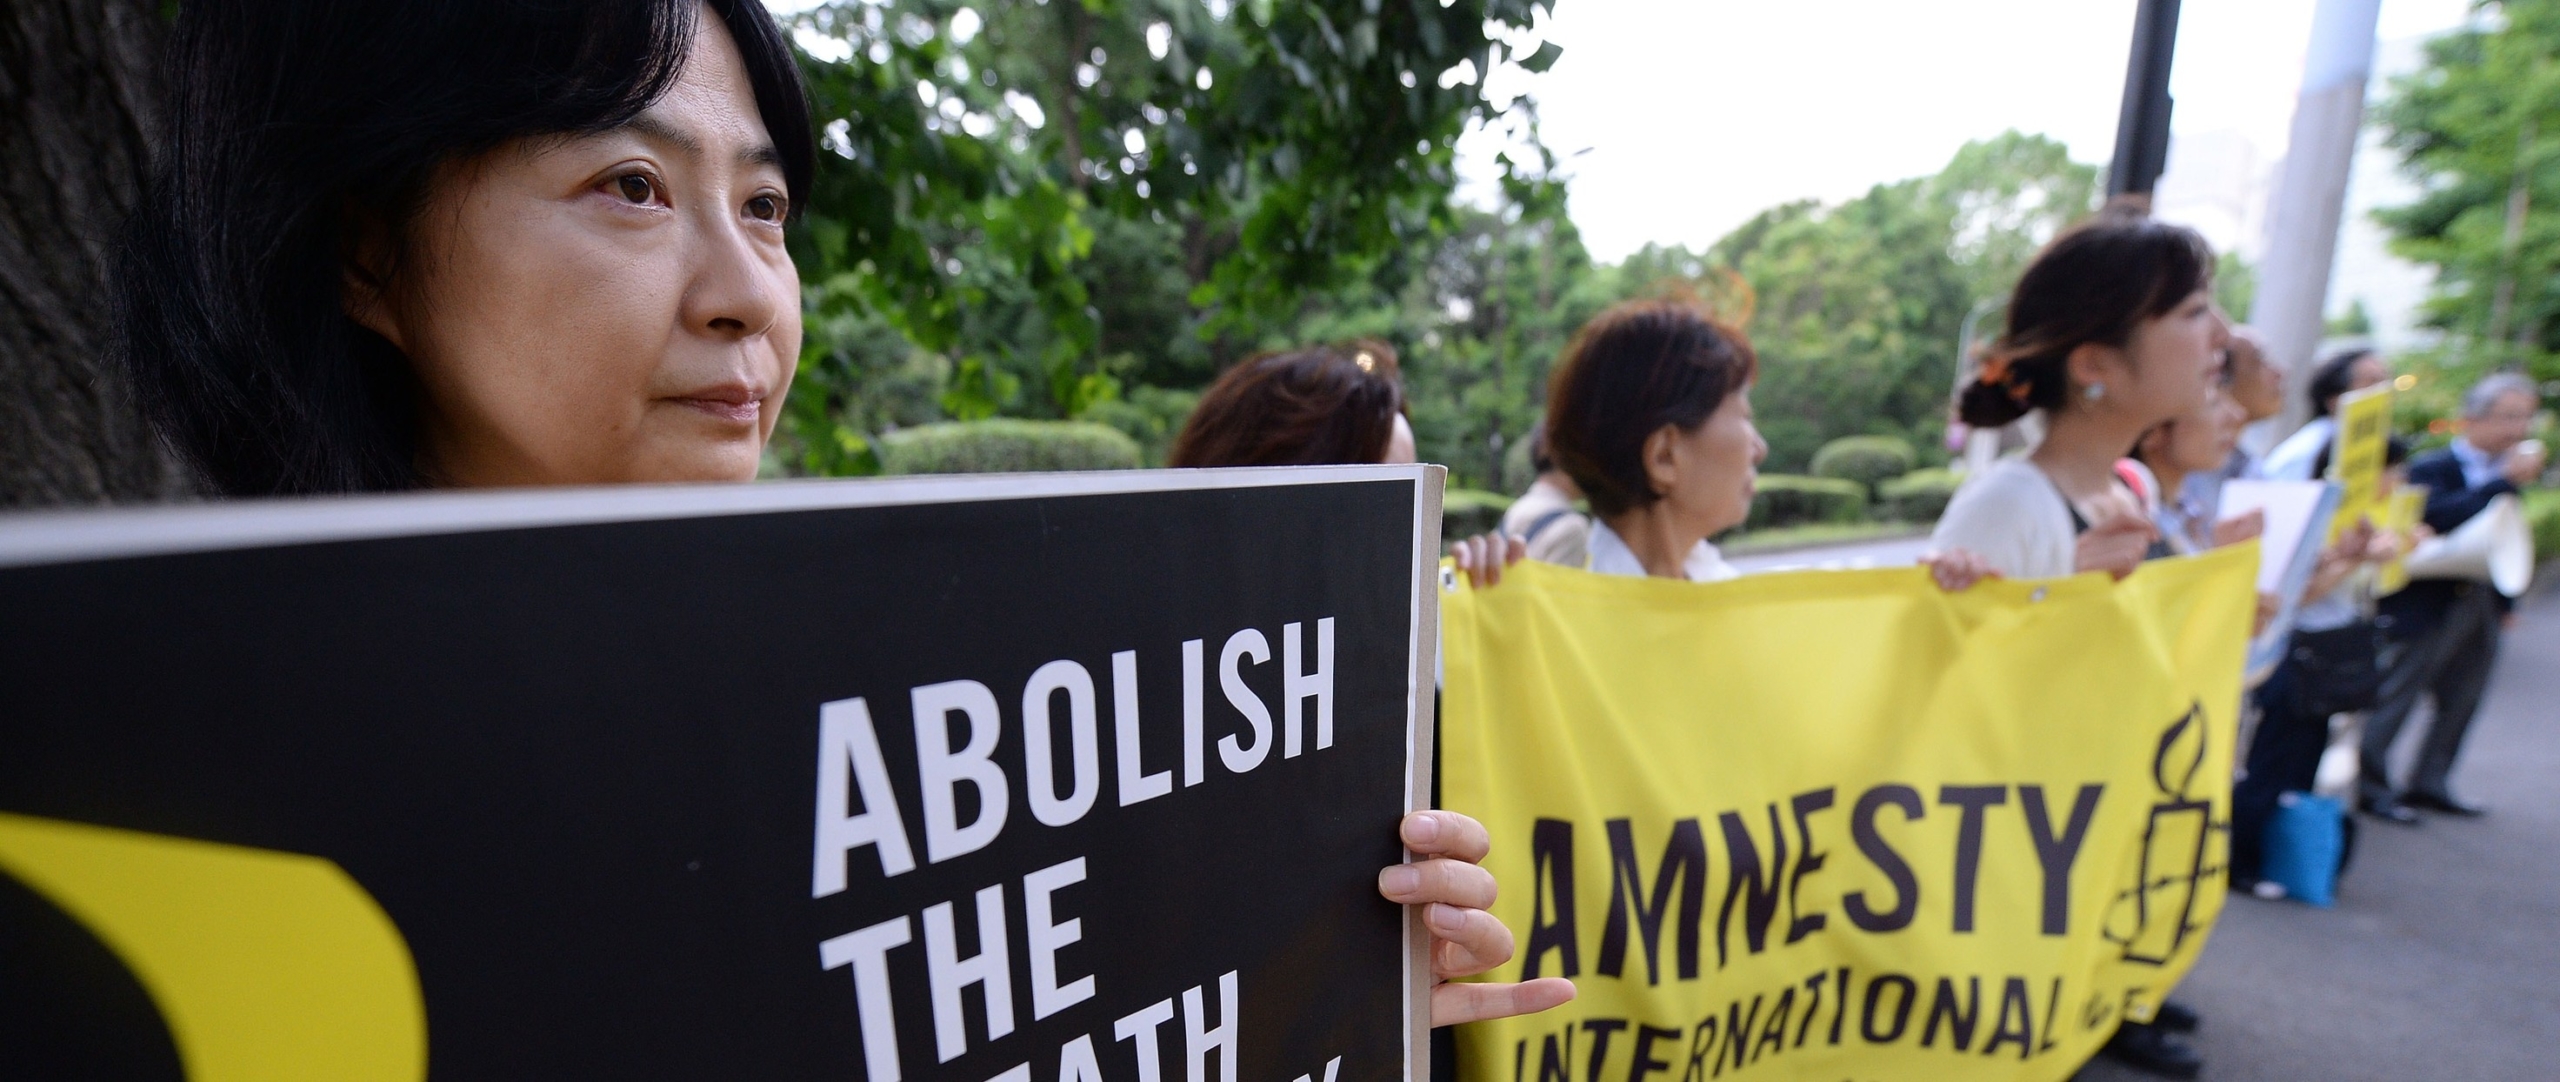 Des membres d'AMnesty tiennent des pancartes appelant l'abolition de la peine de mort